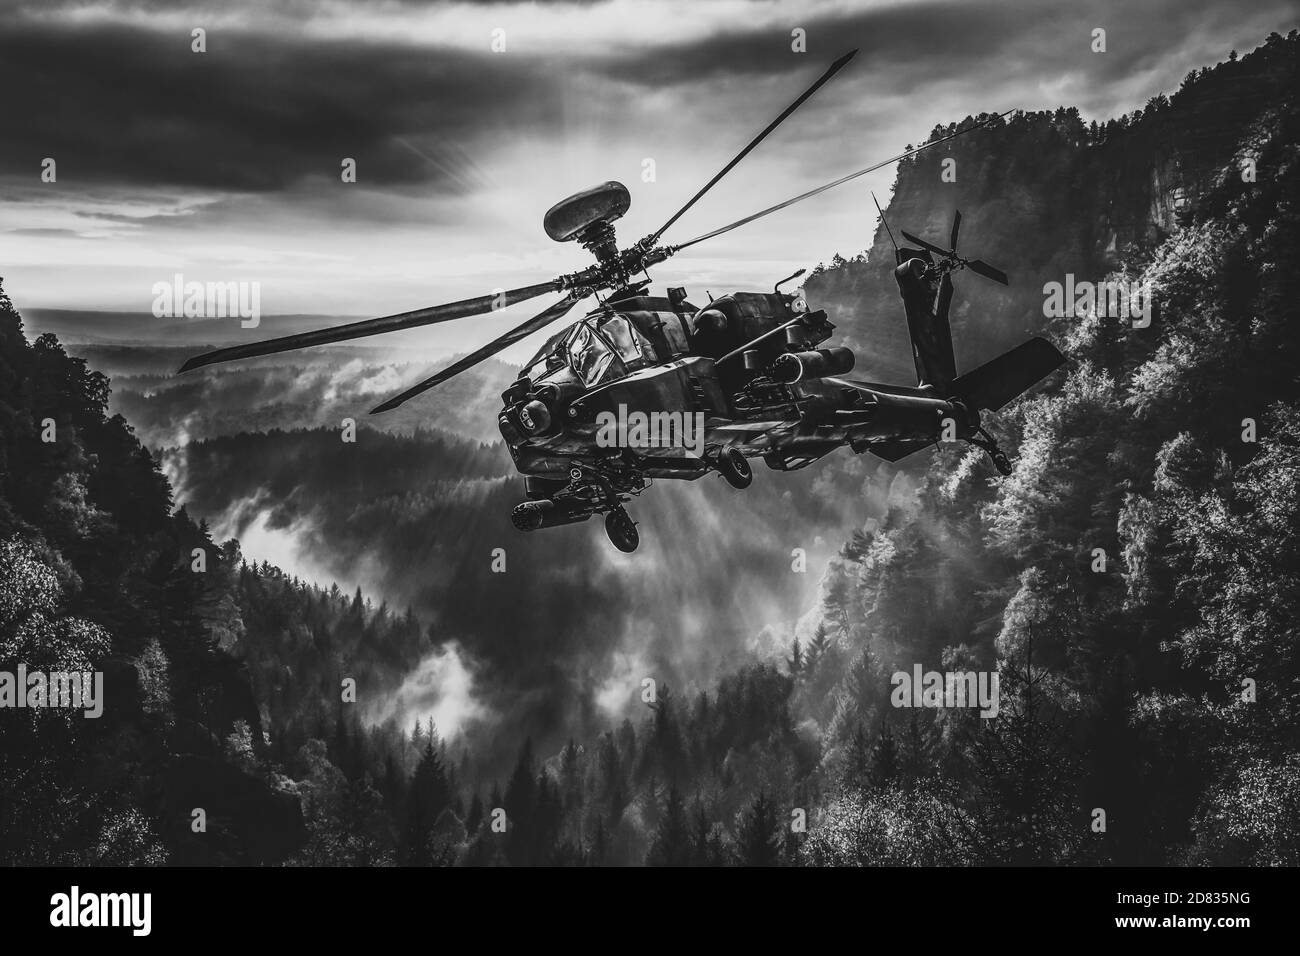 Helicóptero americano de ataque en blanco y negro Foto de stock